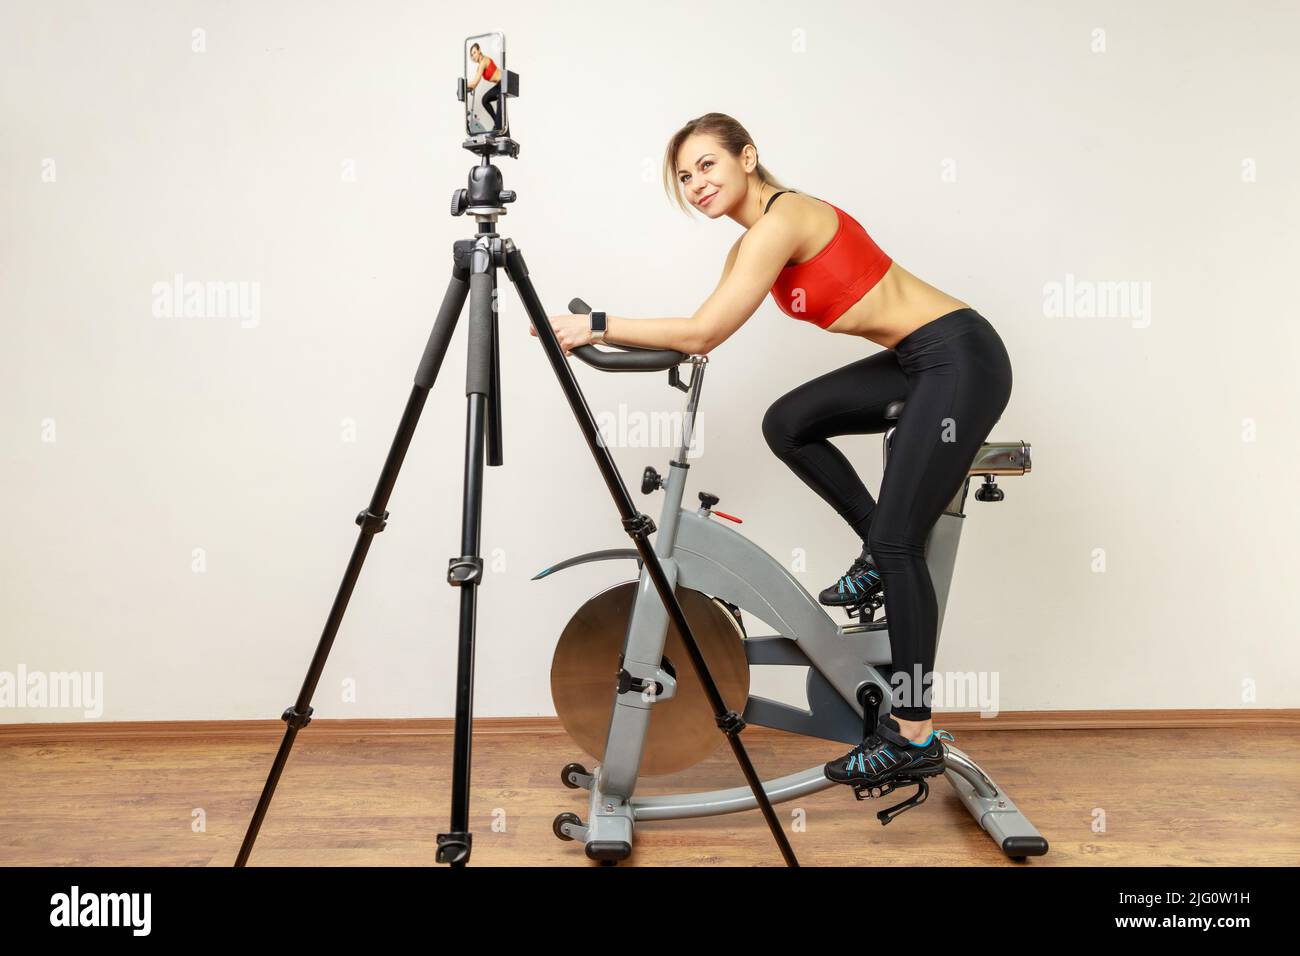 Seitenansicht Porträt einer Bloggerin, die ein Video für ihren Sport-Vlog aufzeichnete, mit Mobiltelefon und Stativ, mit Sportstrumpfhose und rotem Oberteil. Innenstudio auf grauem Wandhintergrund aufgenommen. Stockfoto